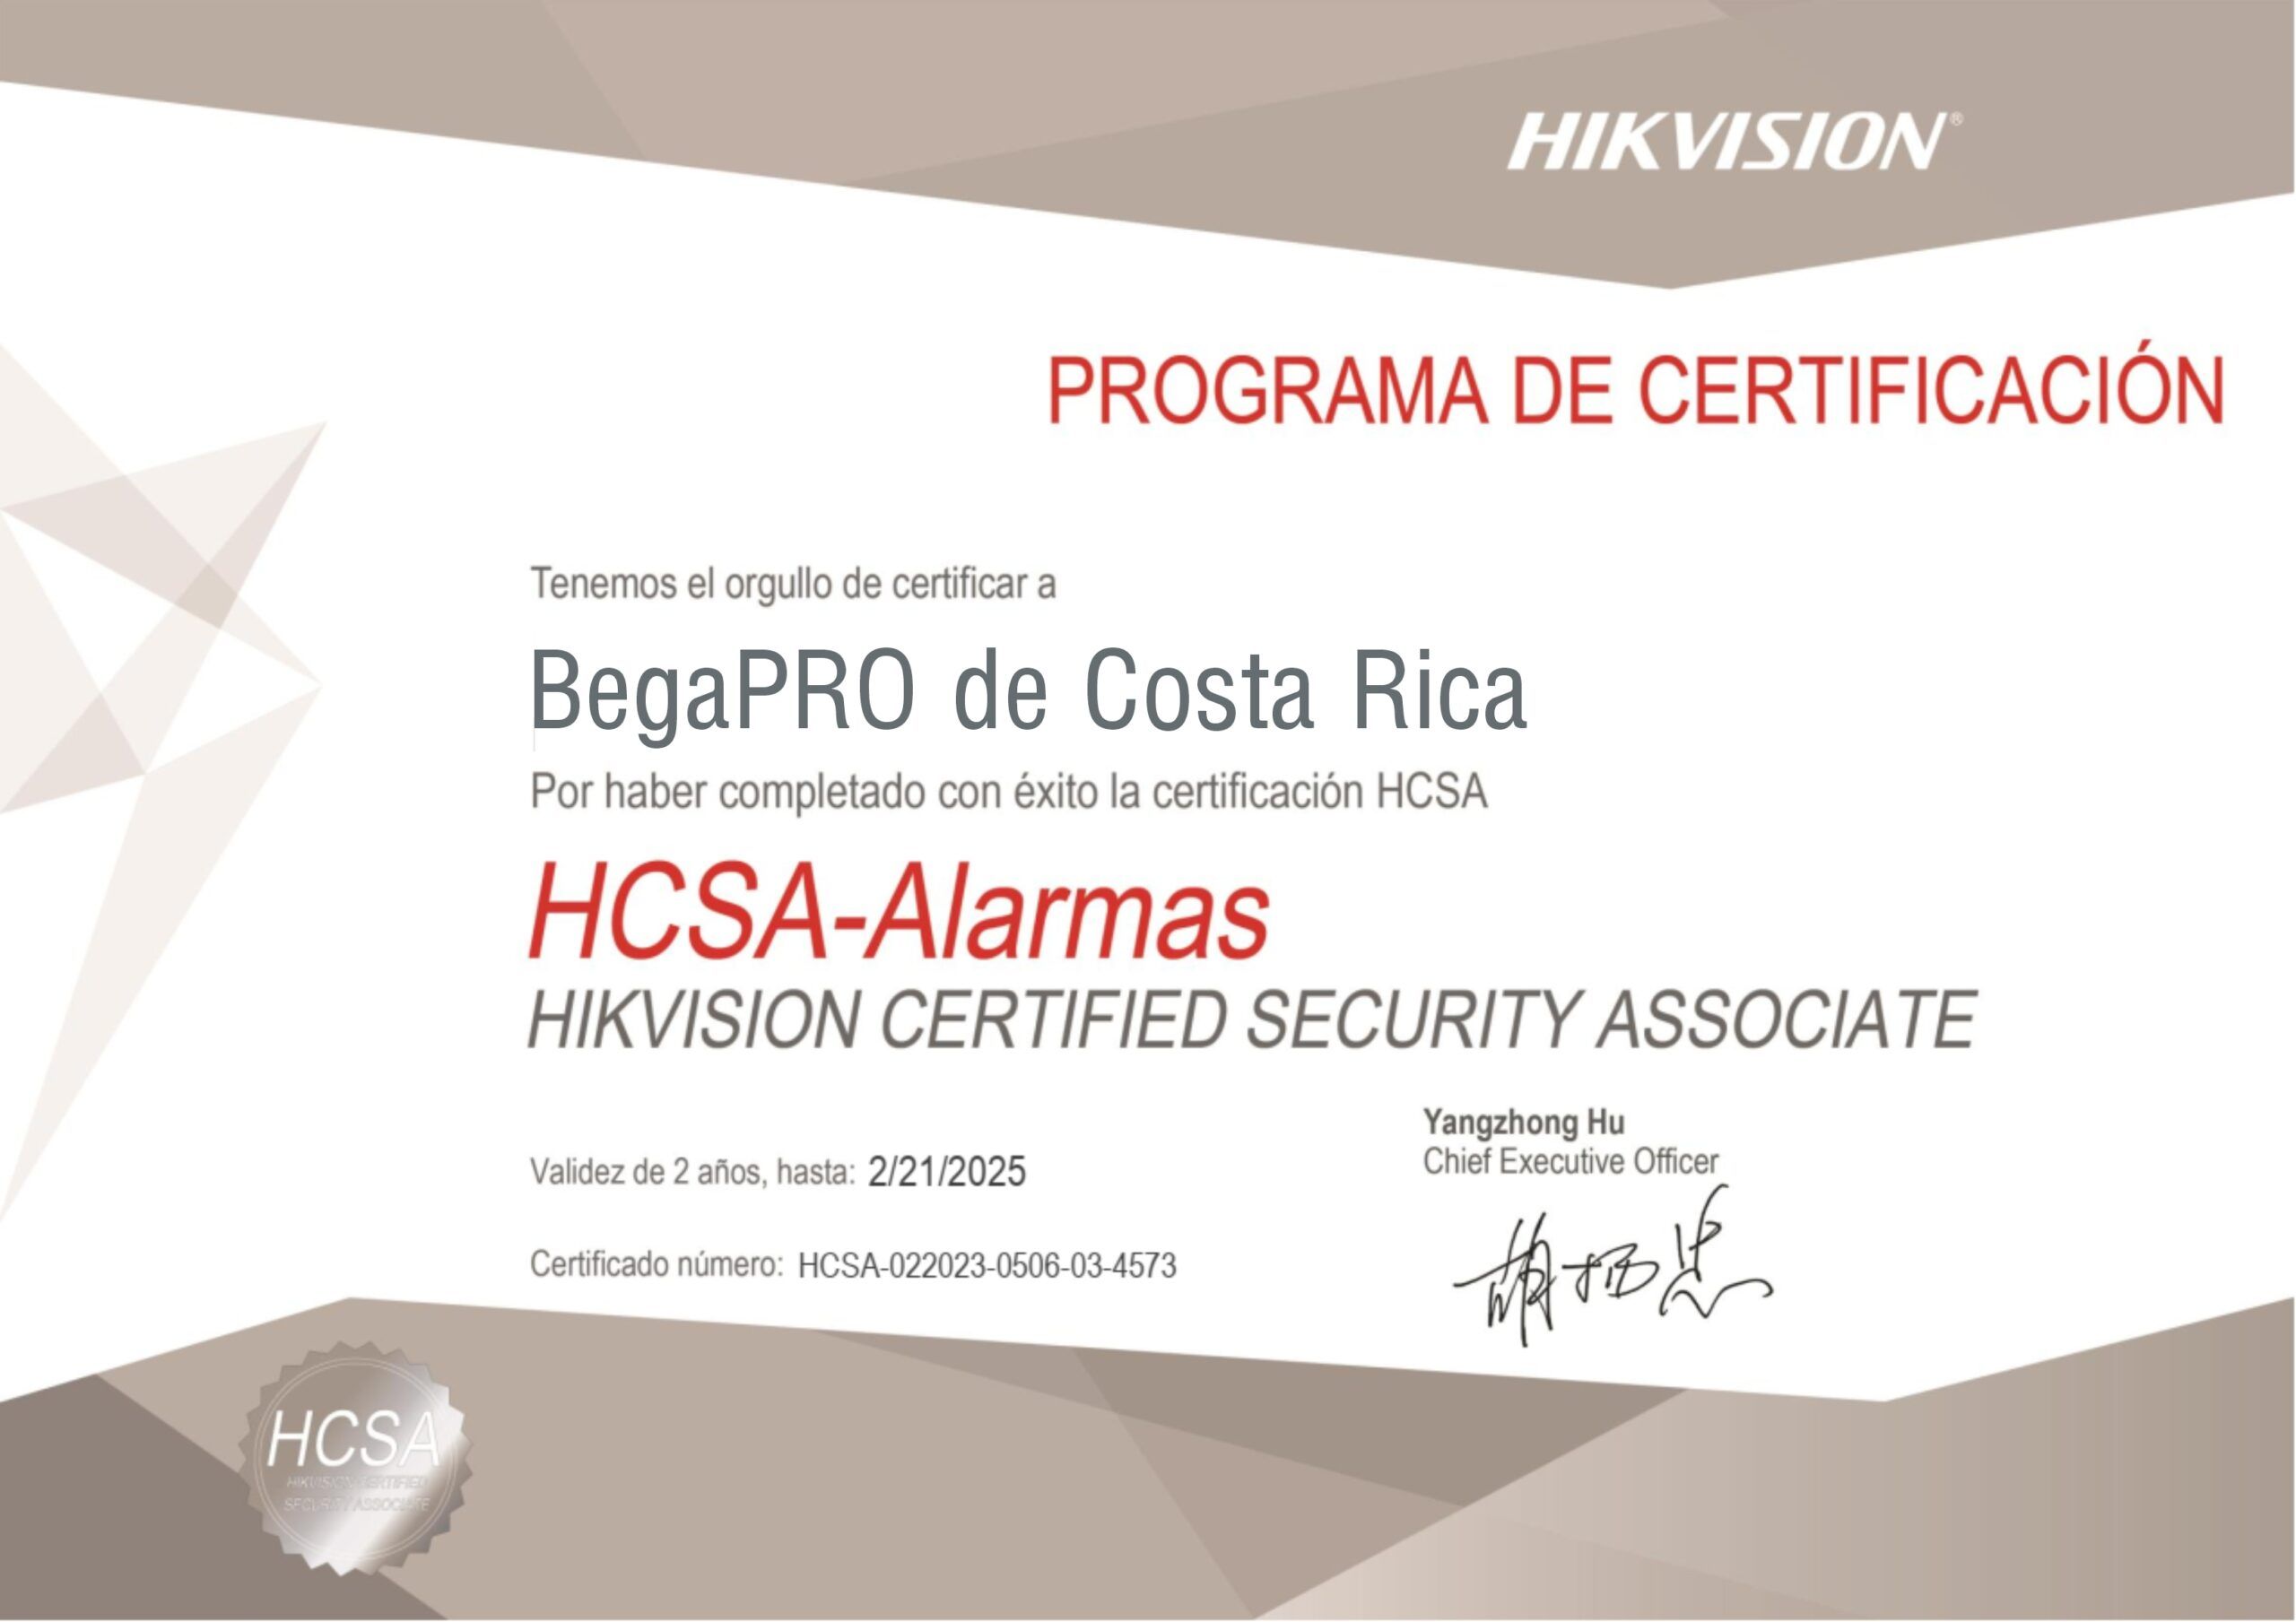 HCSA-Alarmas